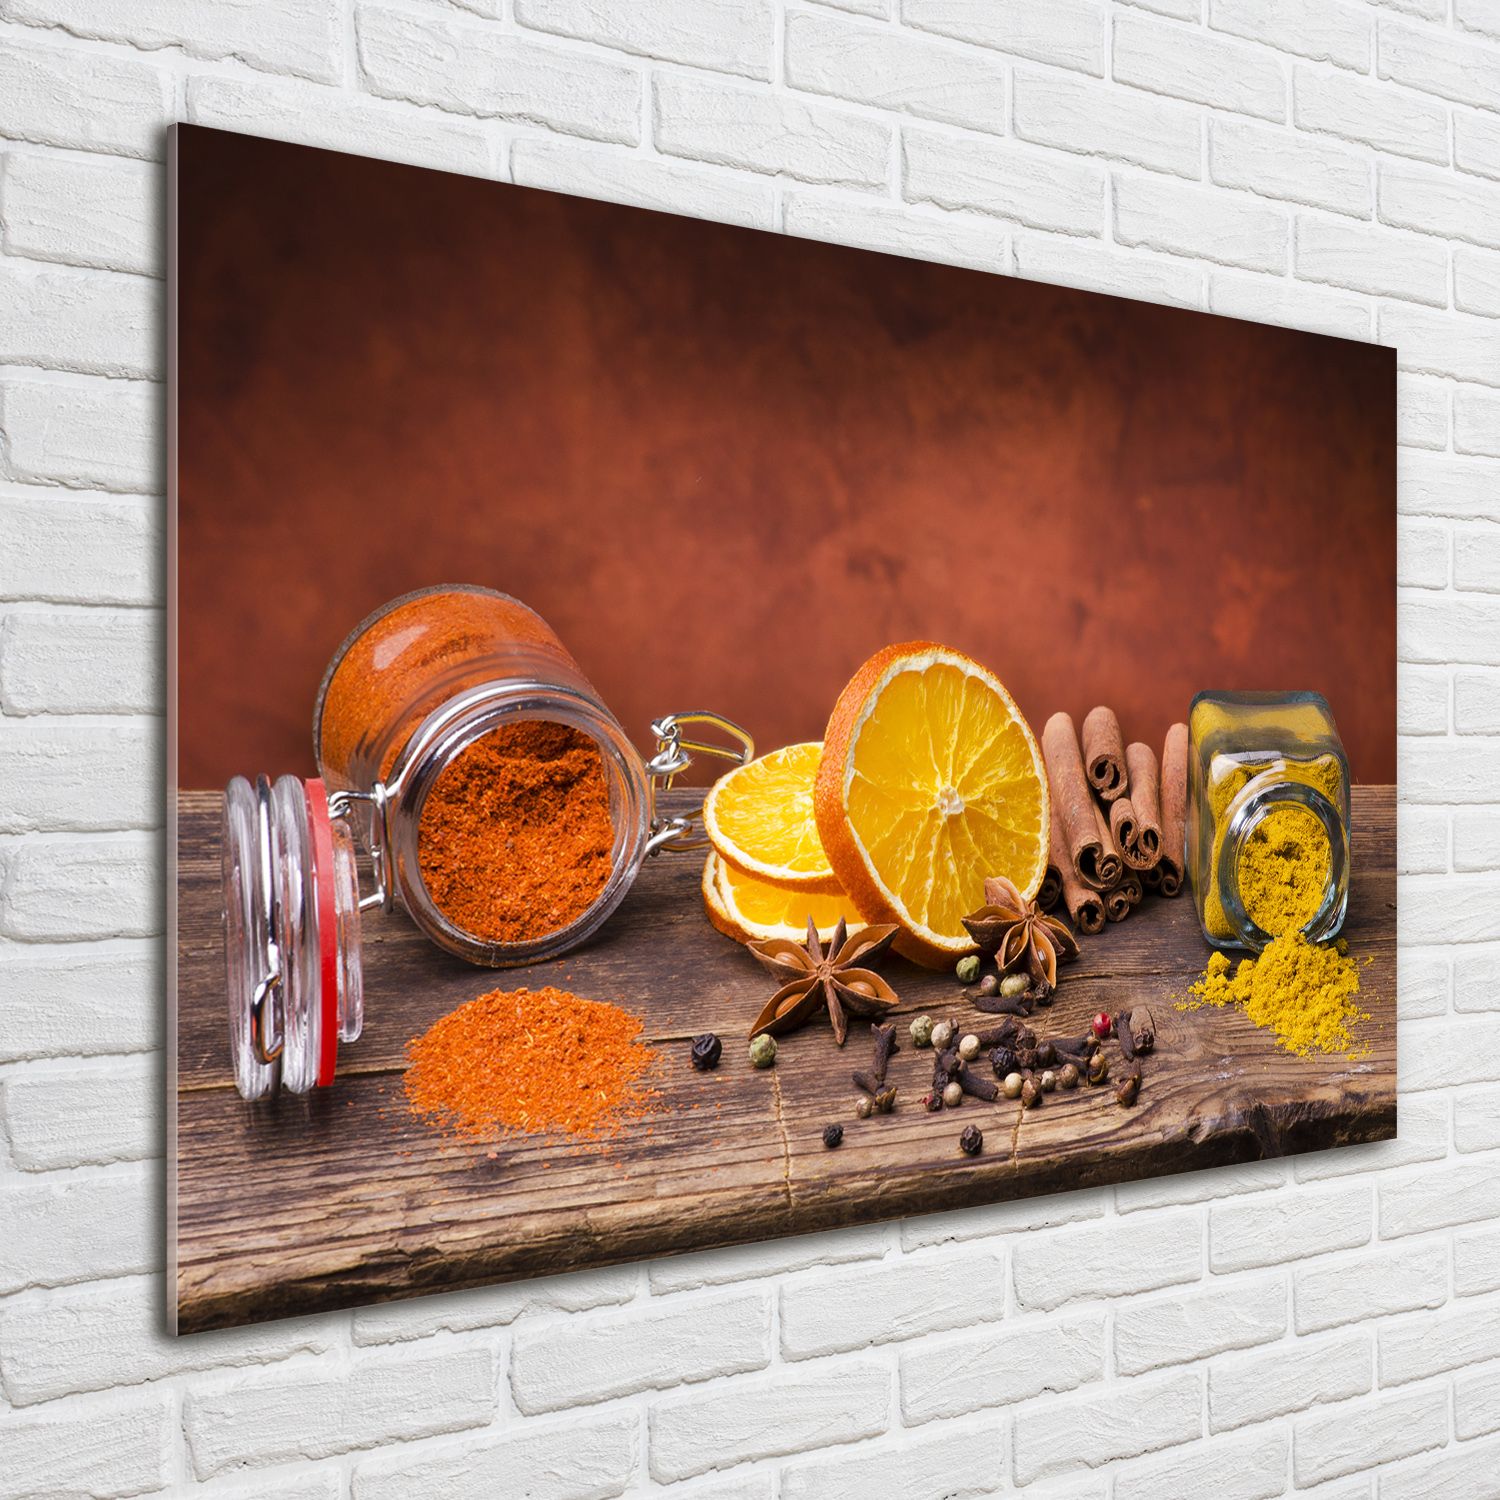 Acrylglas-Bild Wandbilder Druck 100x70 Deko Essen & Getränke Gewürze Mischung